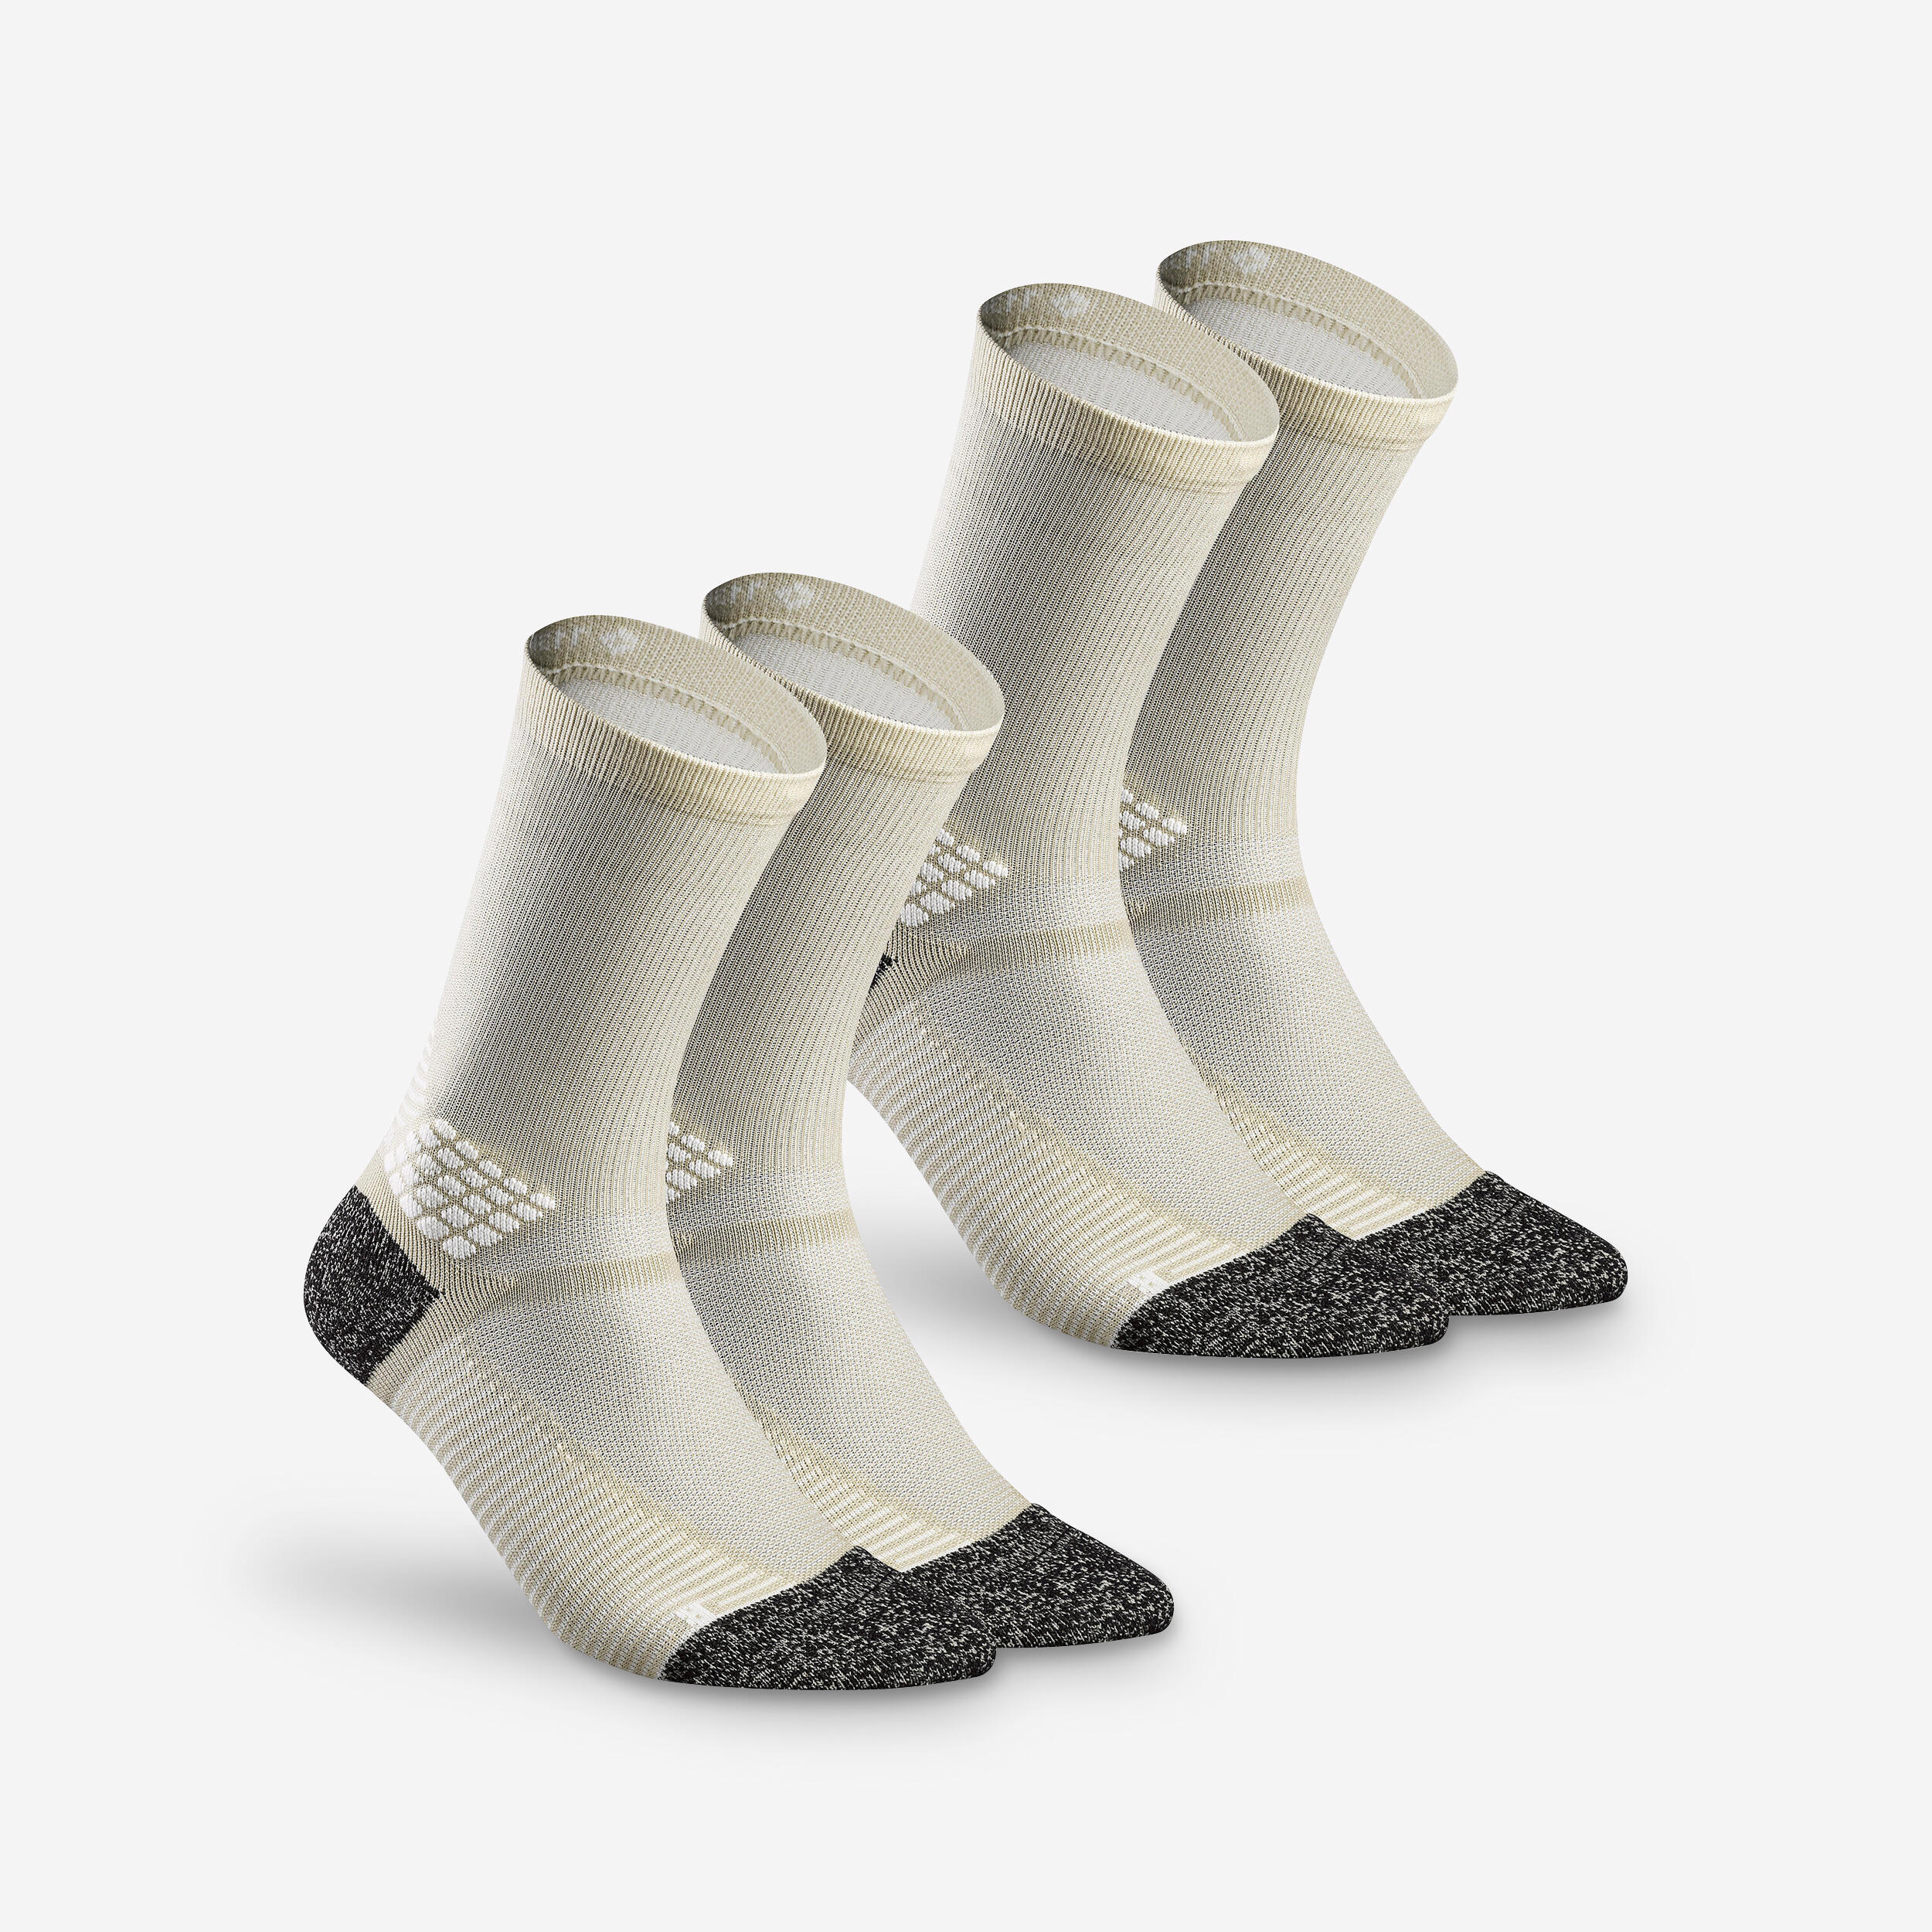 QUECHUA Hiking socks - Hike 500 High Beige x2 pairs 